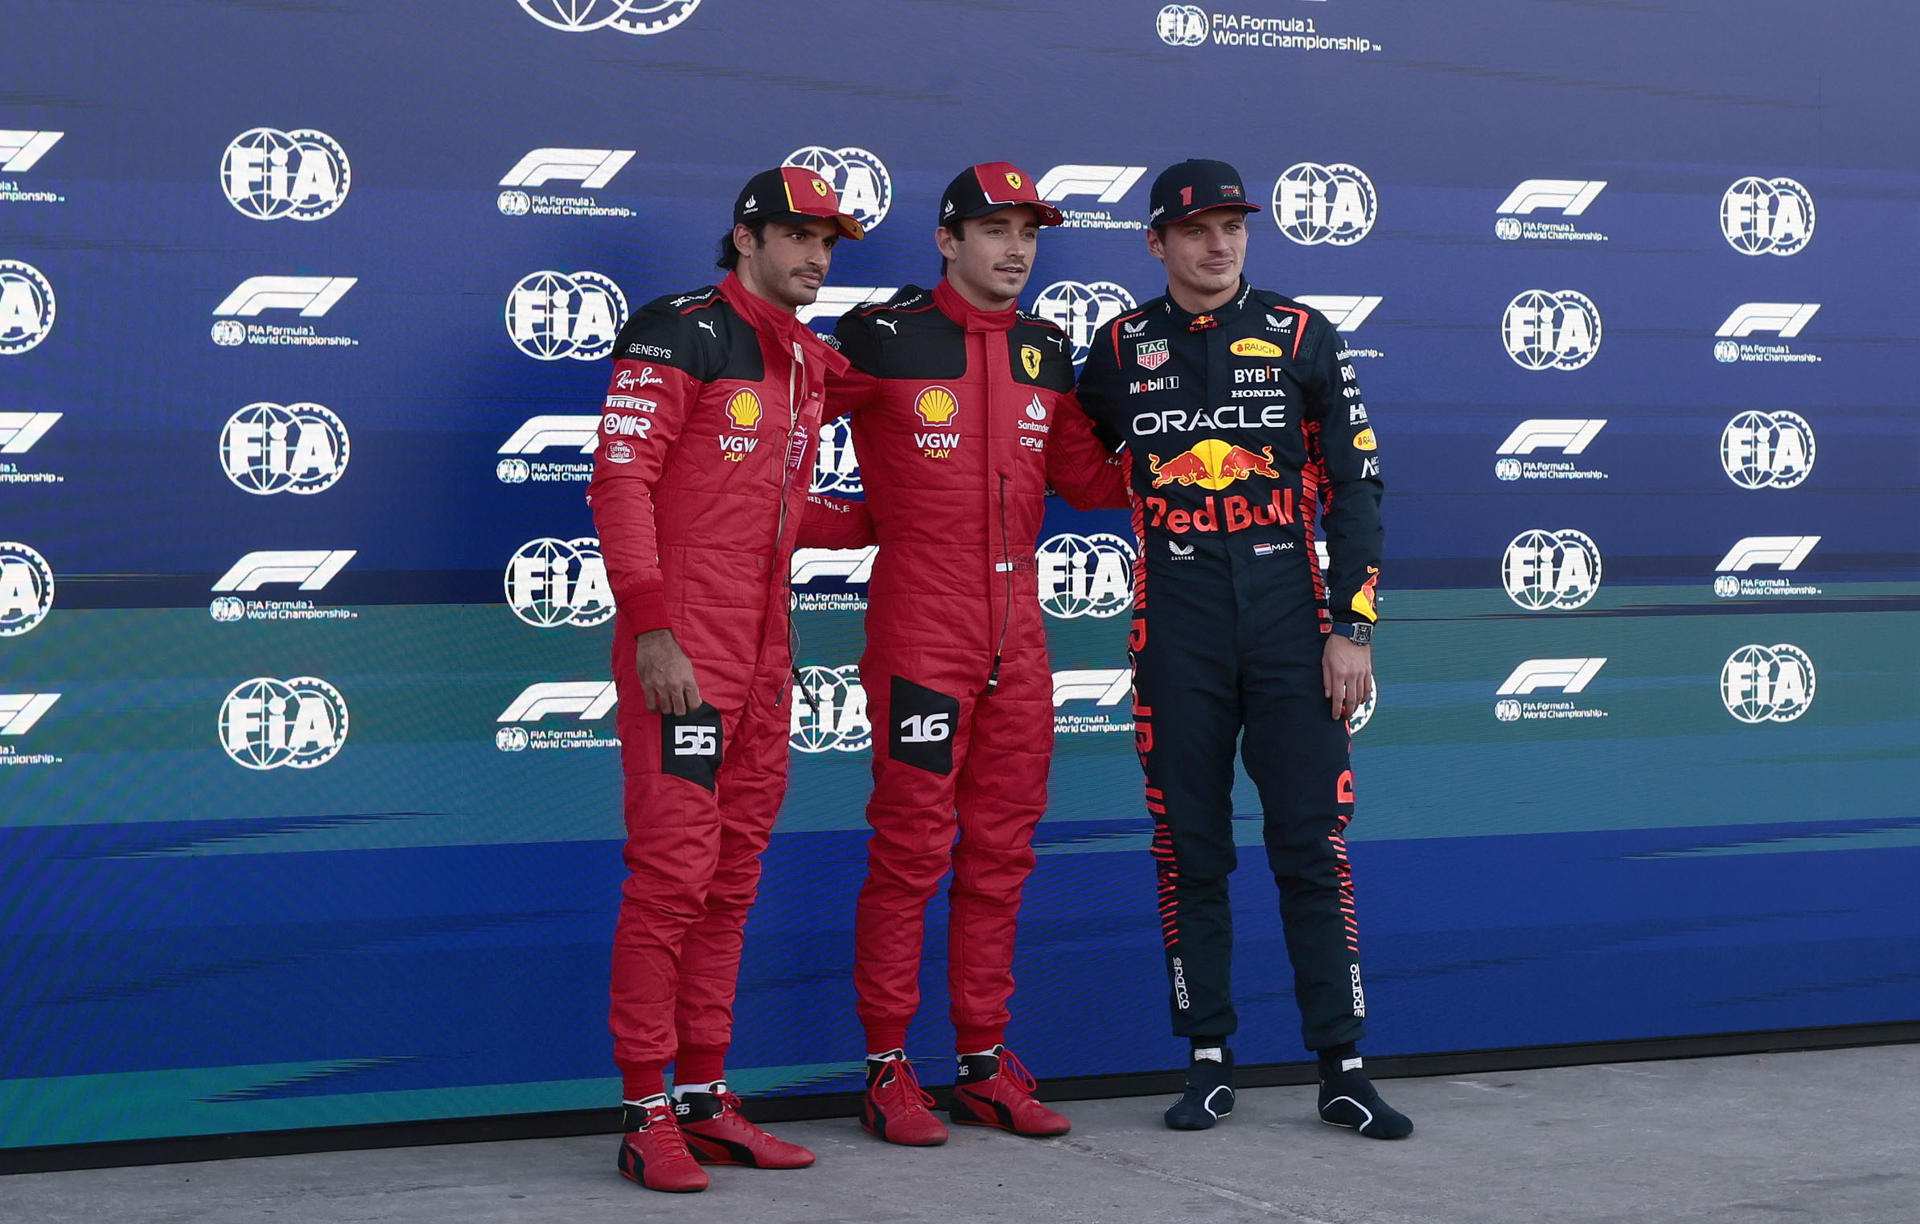 Max Verstappen, contra Carlos Sainz, Red Bull se lleva a la estrella, fichaje cerrado